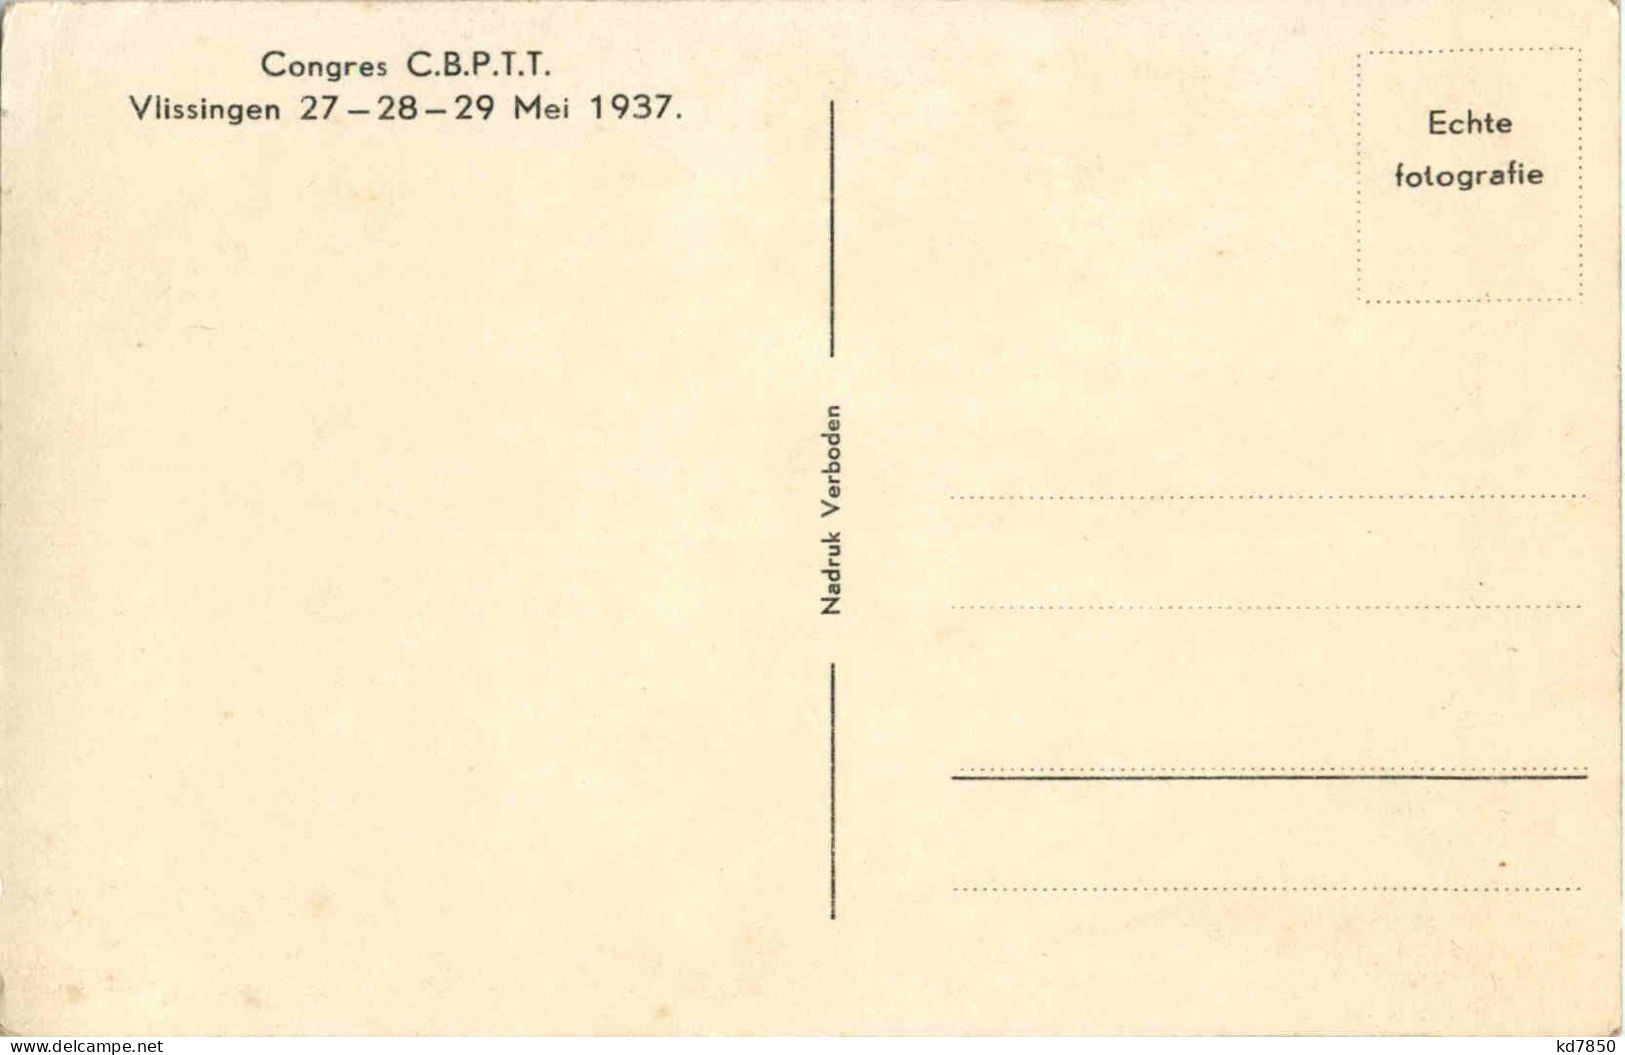 Zierikzee - Congres CBPTT Vlissingen 1937 - Zierikzee